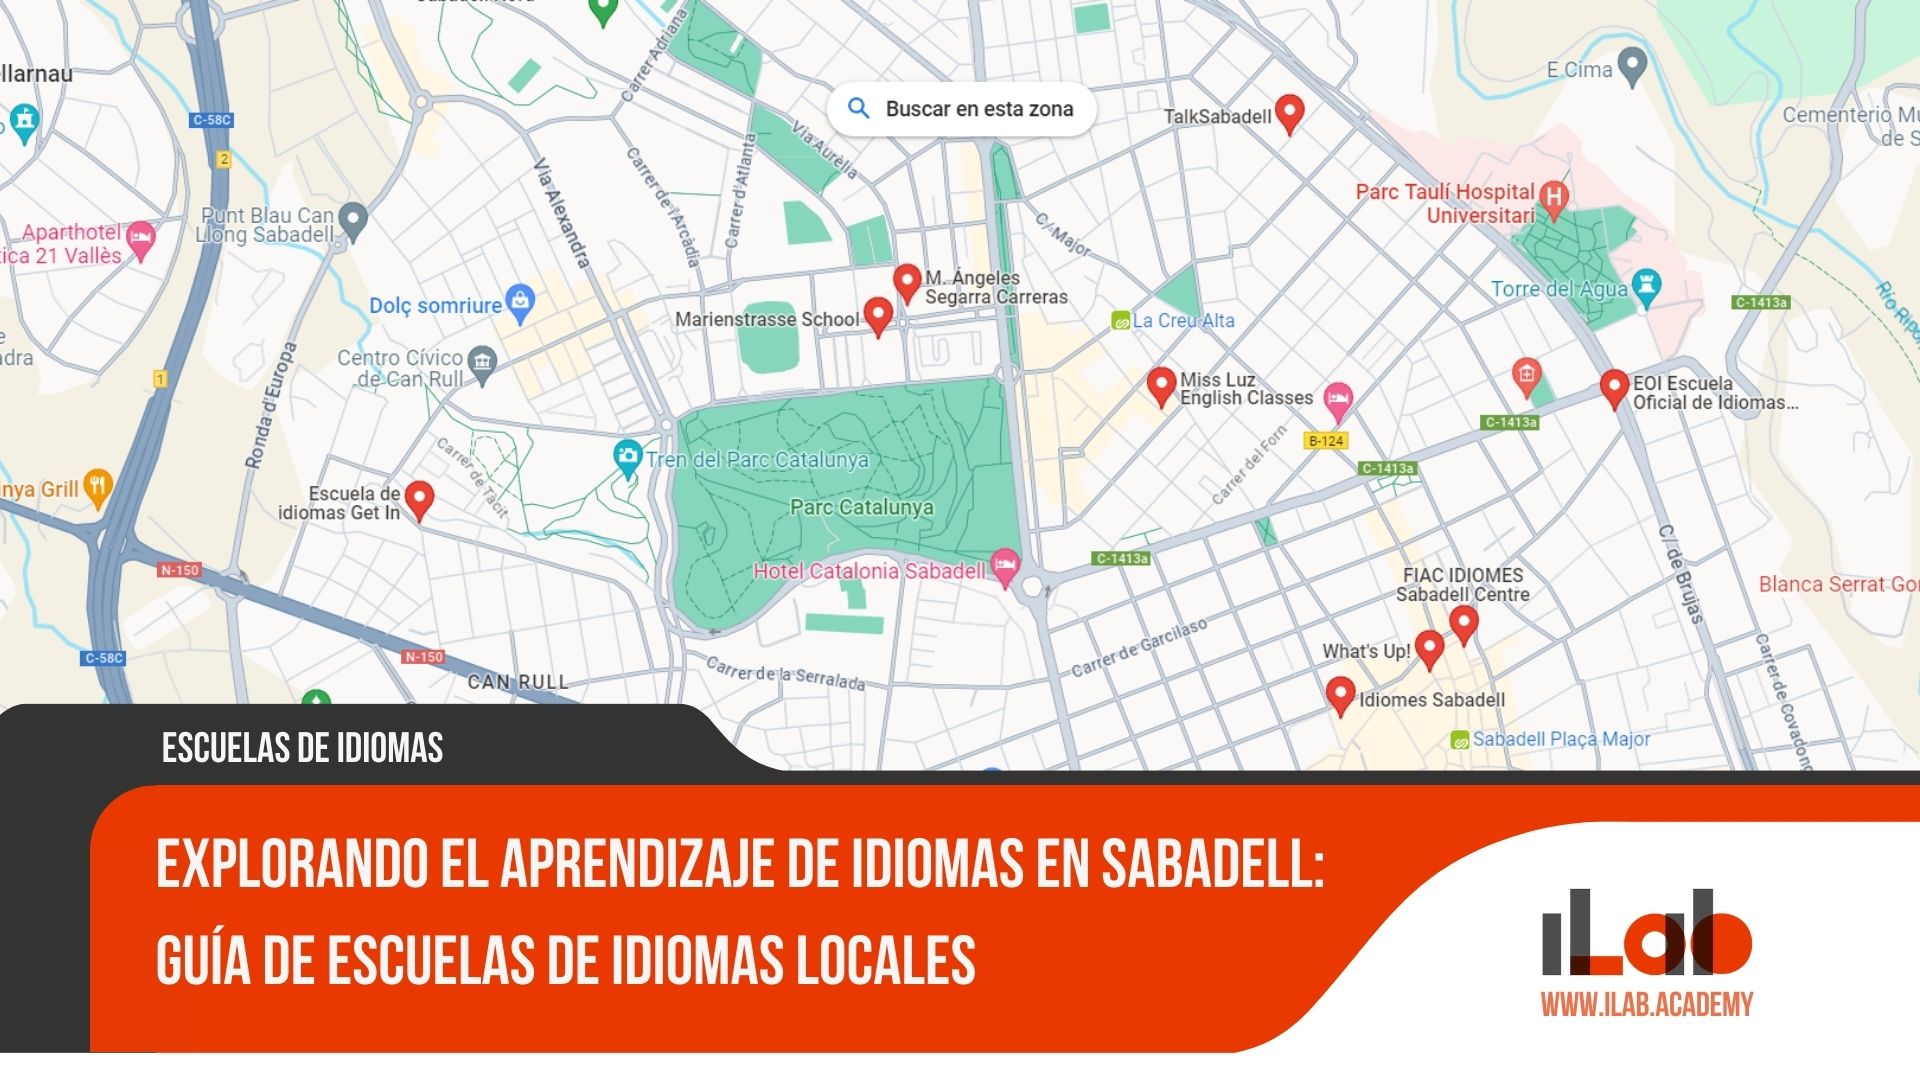 Explorando el aprendizaje de idiomas en Sabadell: Guía de escuelas de idiomas locales